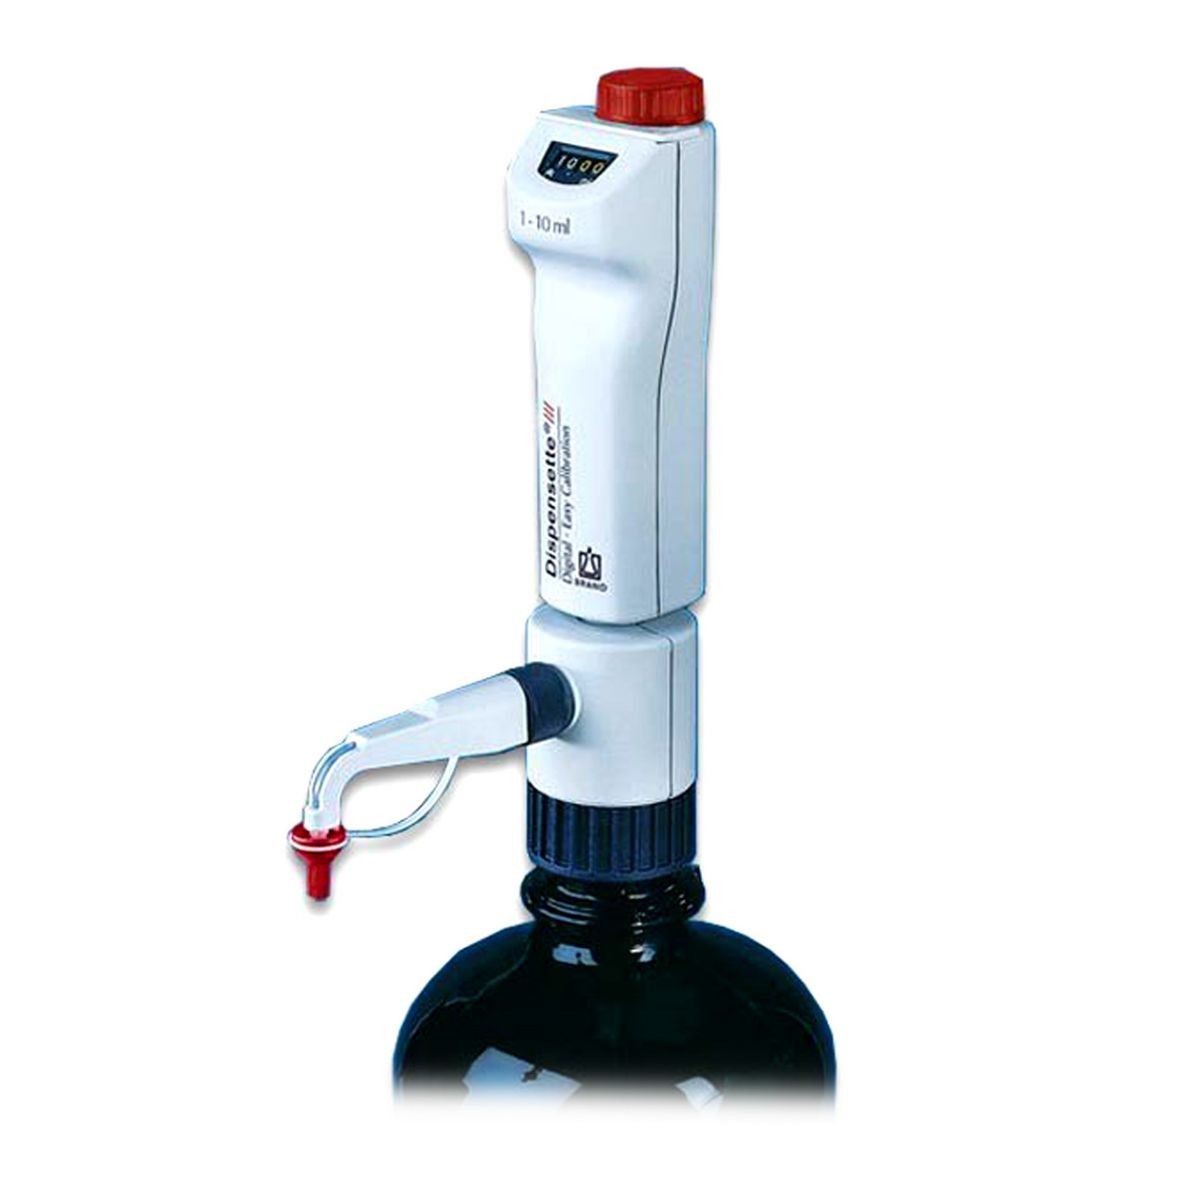 Dispensador Dispensette III Digital Easy Calibration com Válvula Safety Prime 5- 50 ml Brand